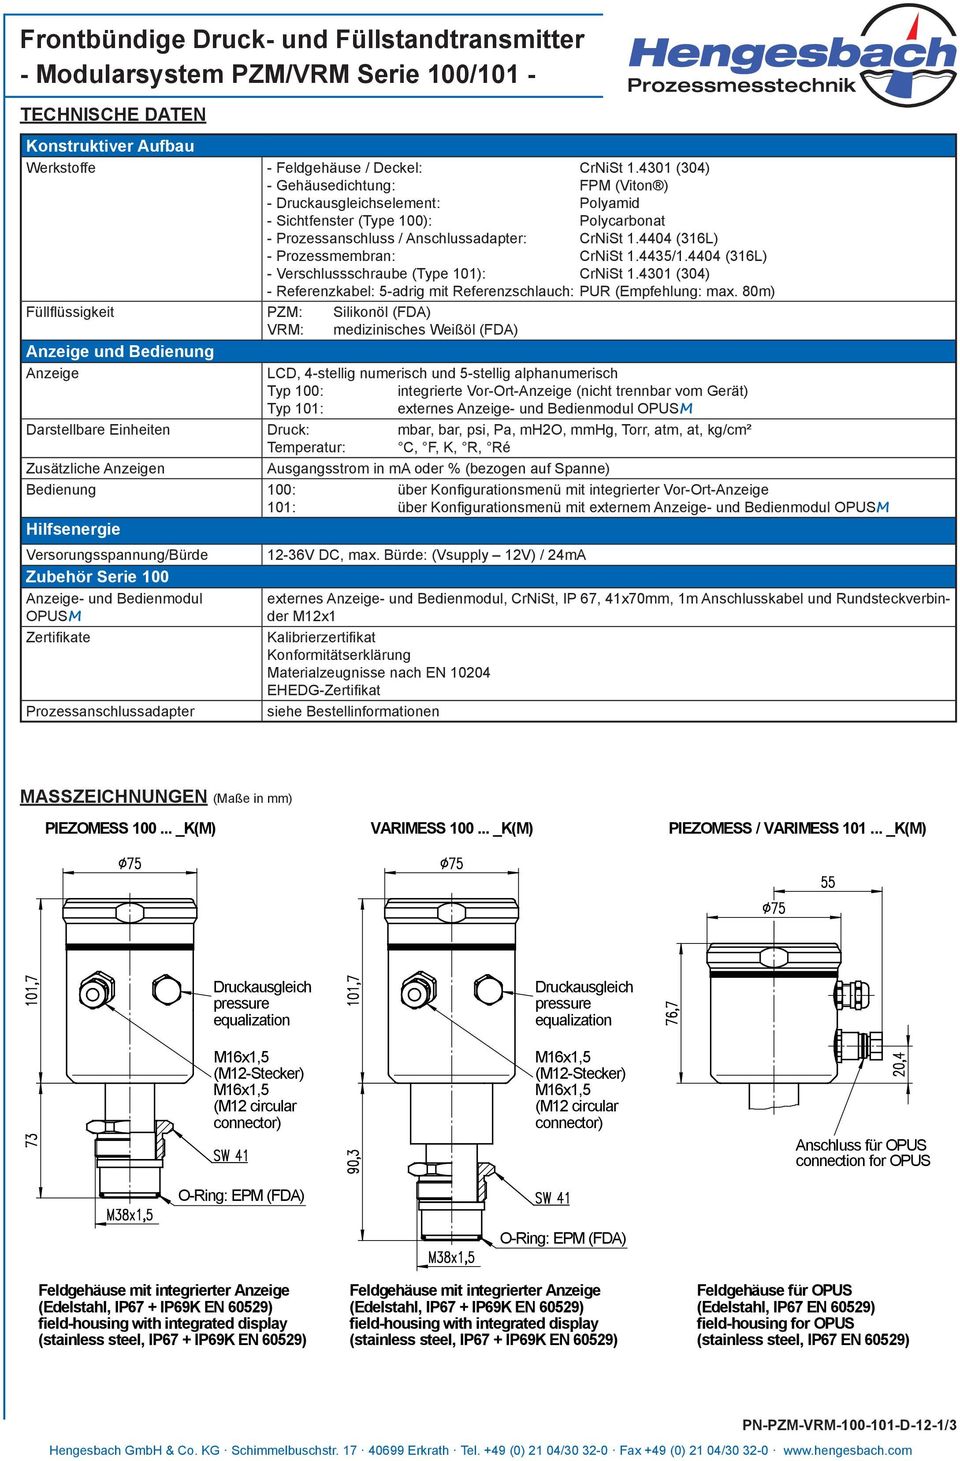 4404 (316L) - Prozessmembran: CrNiSt 1.4435/1.4404 (316L) - Verschlussschraube (Type 101): CrNiSt 1.4301 (304) - Referenzkabel: 5-adrig mit Referenzschlauch: PUR (Empfehlung: max.